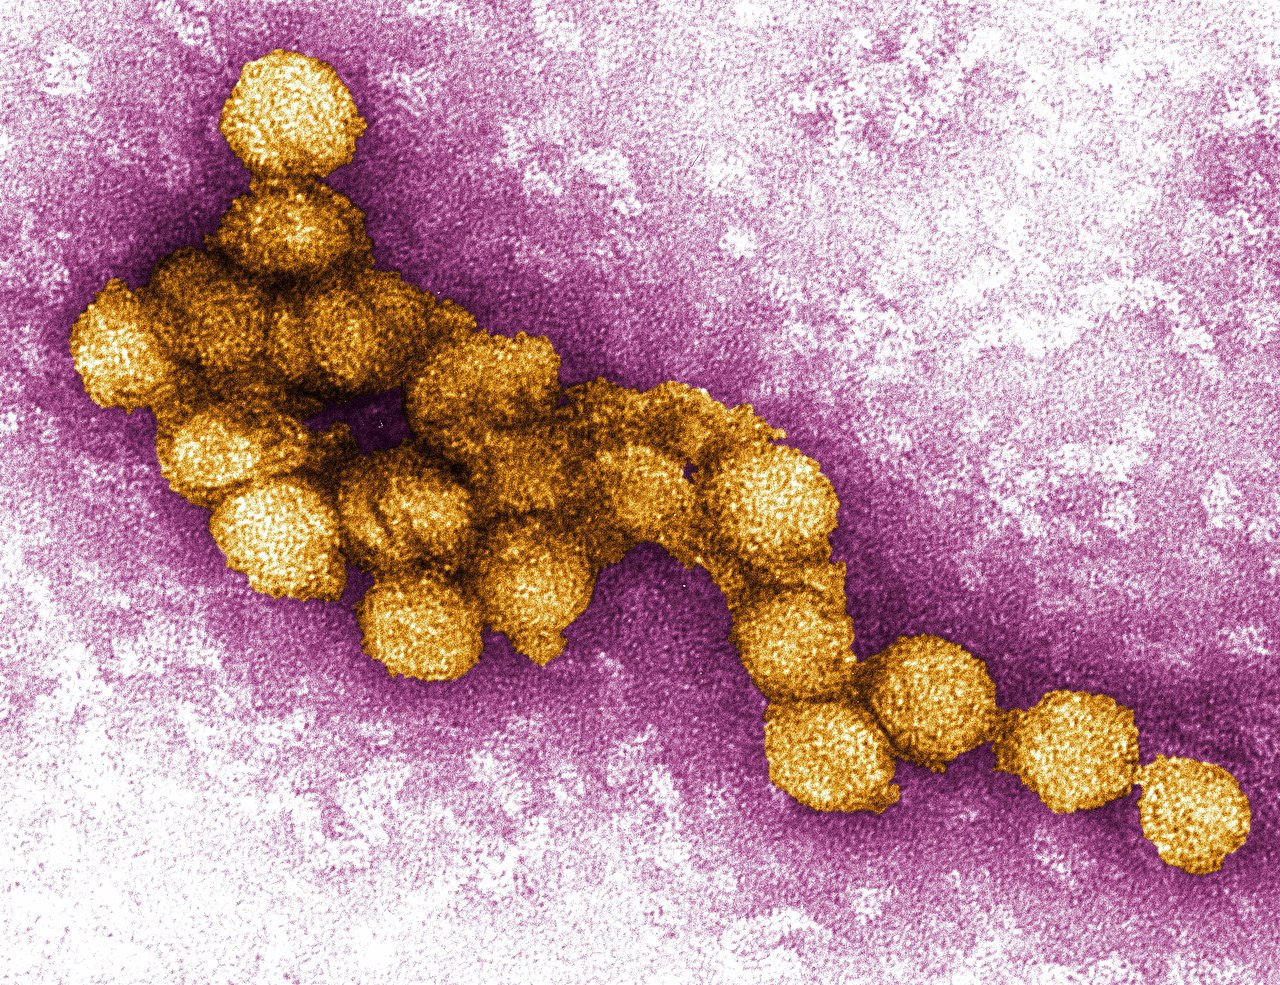 فيروس غرب النيل: الأعراض والعلاج